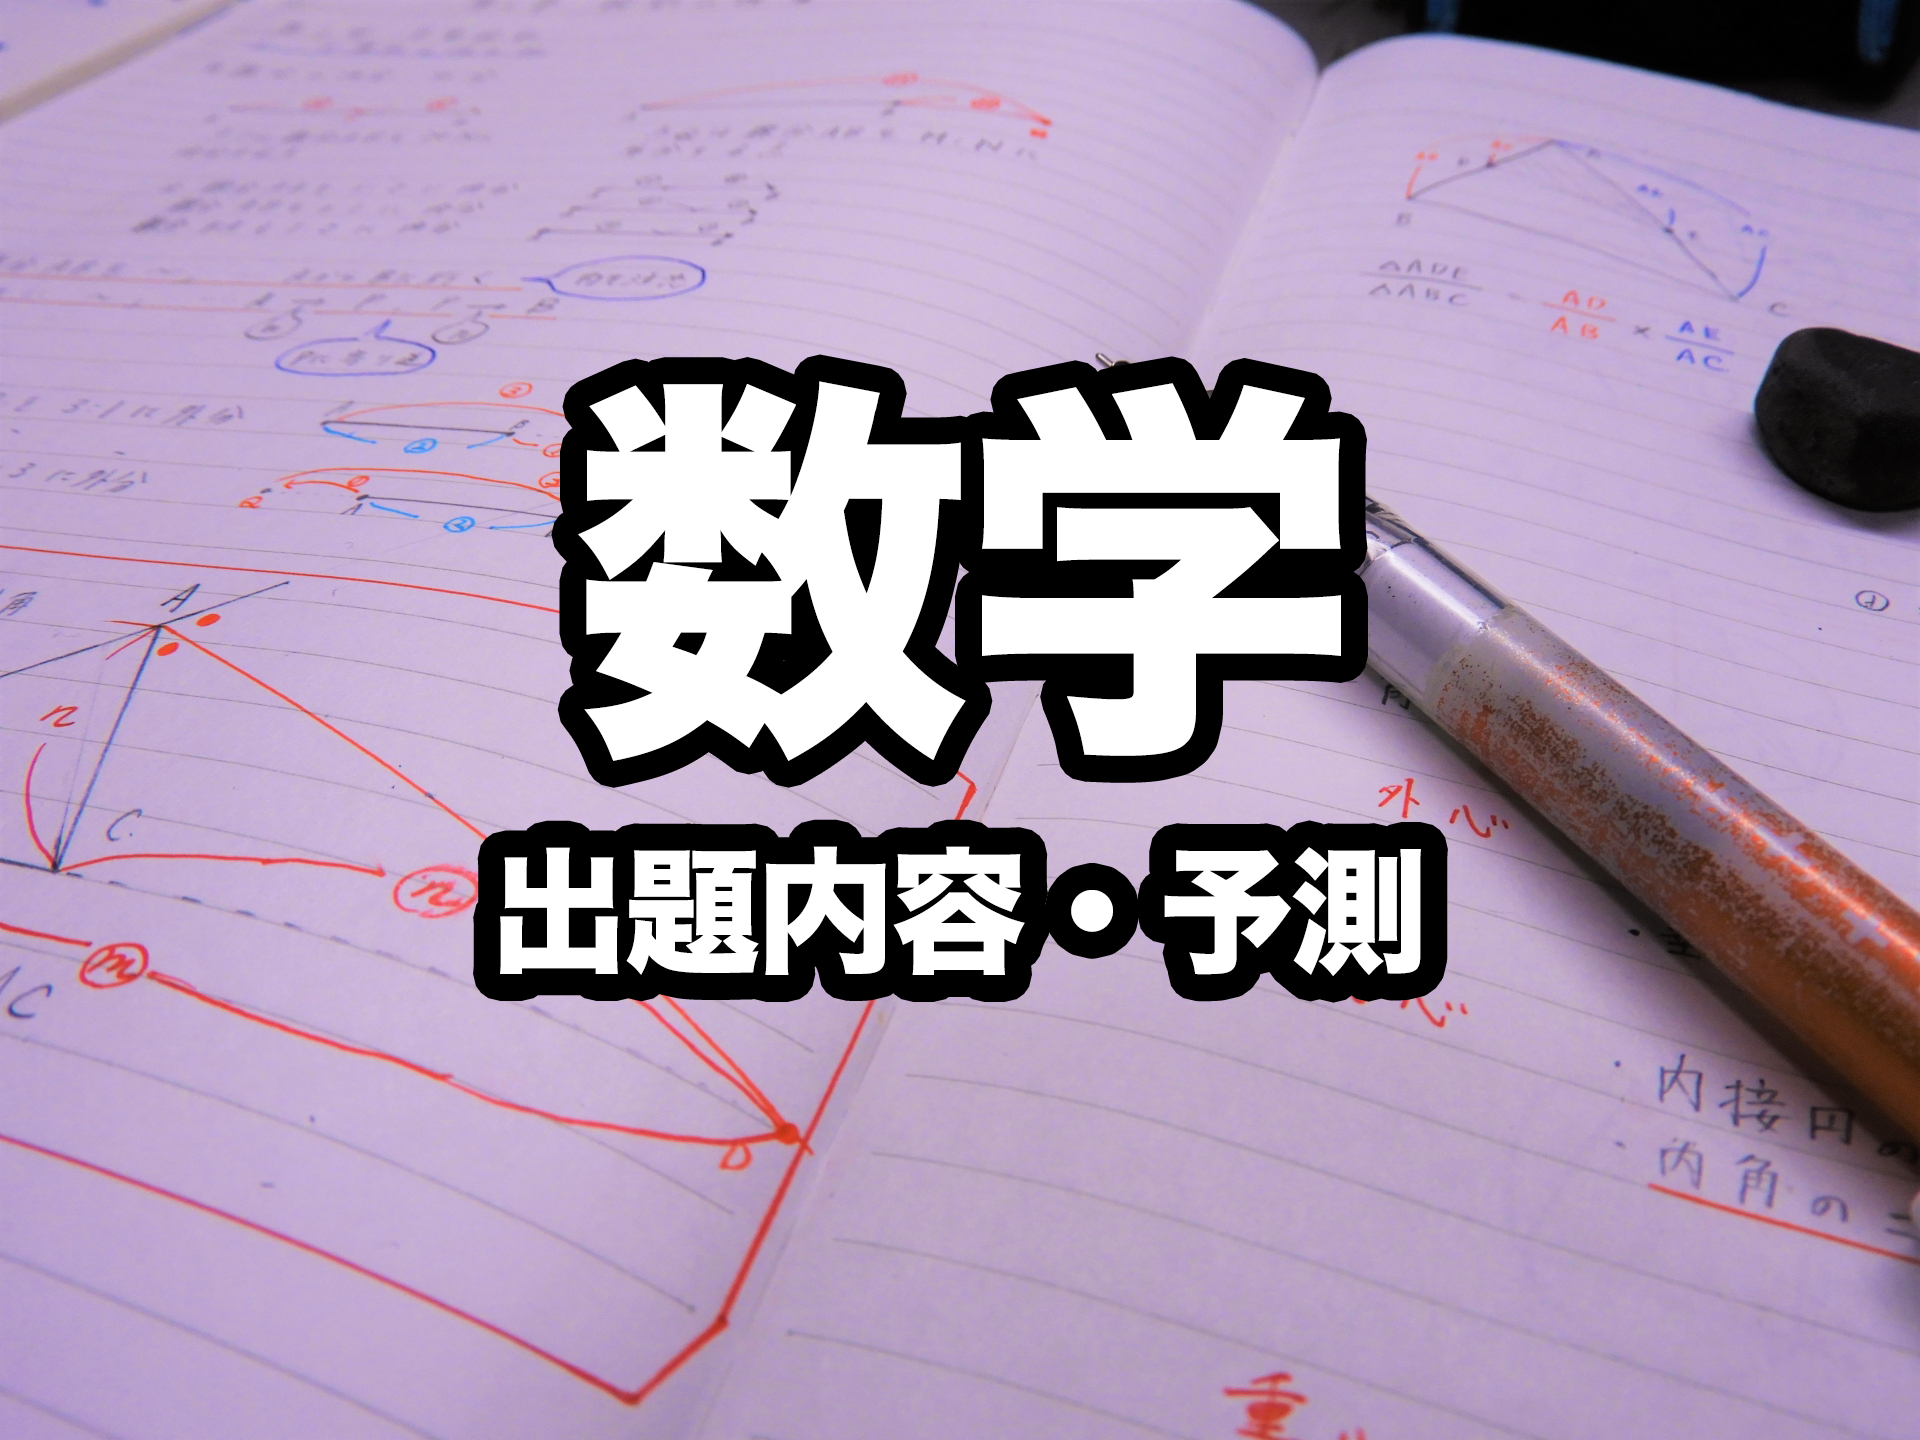 【2022年対応】石川県公立高校入試『 数学 』の出題傾向と出題予測のヒント